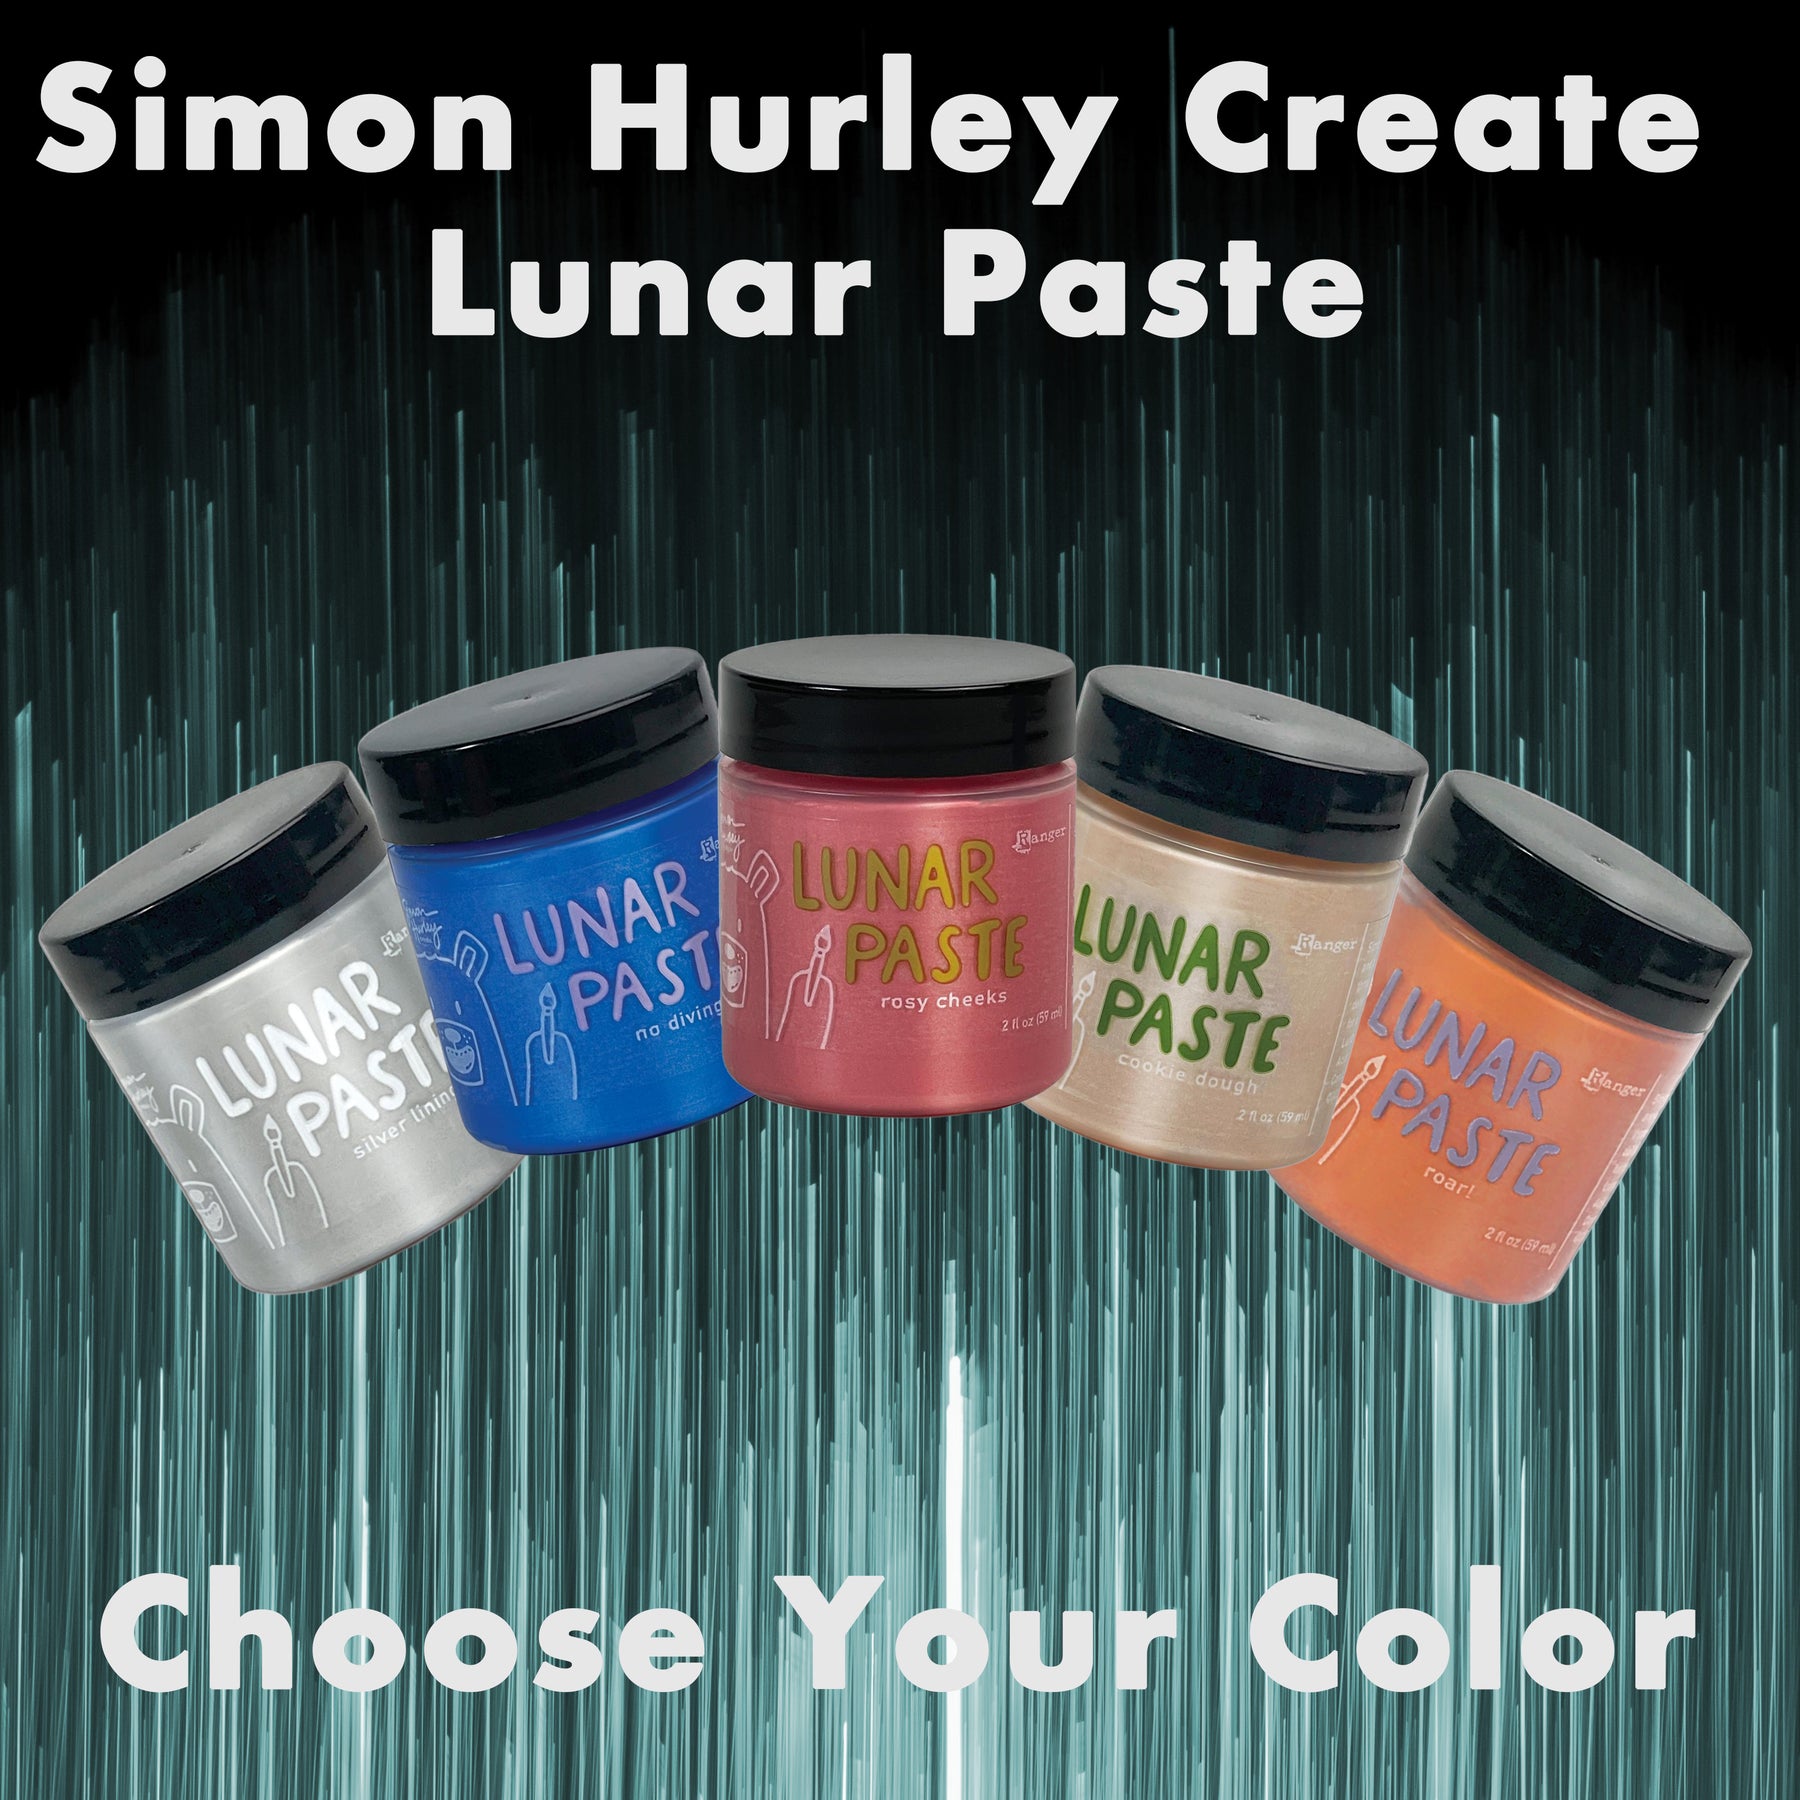 Simon Hurley create. Lunar Paste - Slippery When Wet